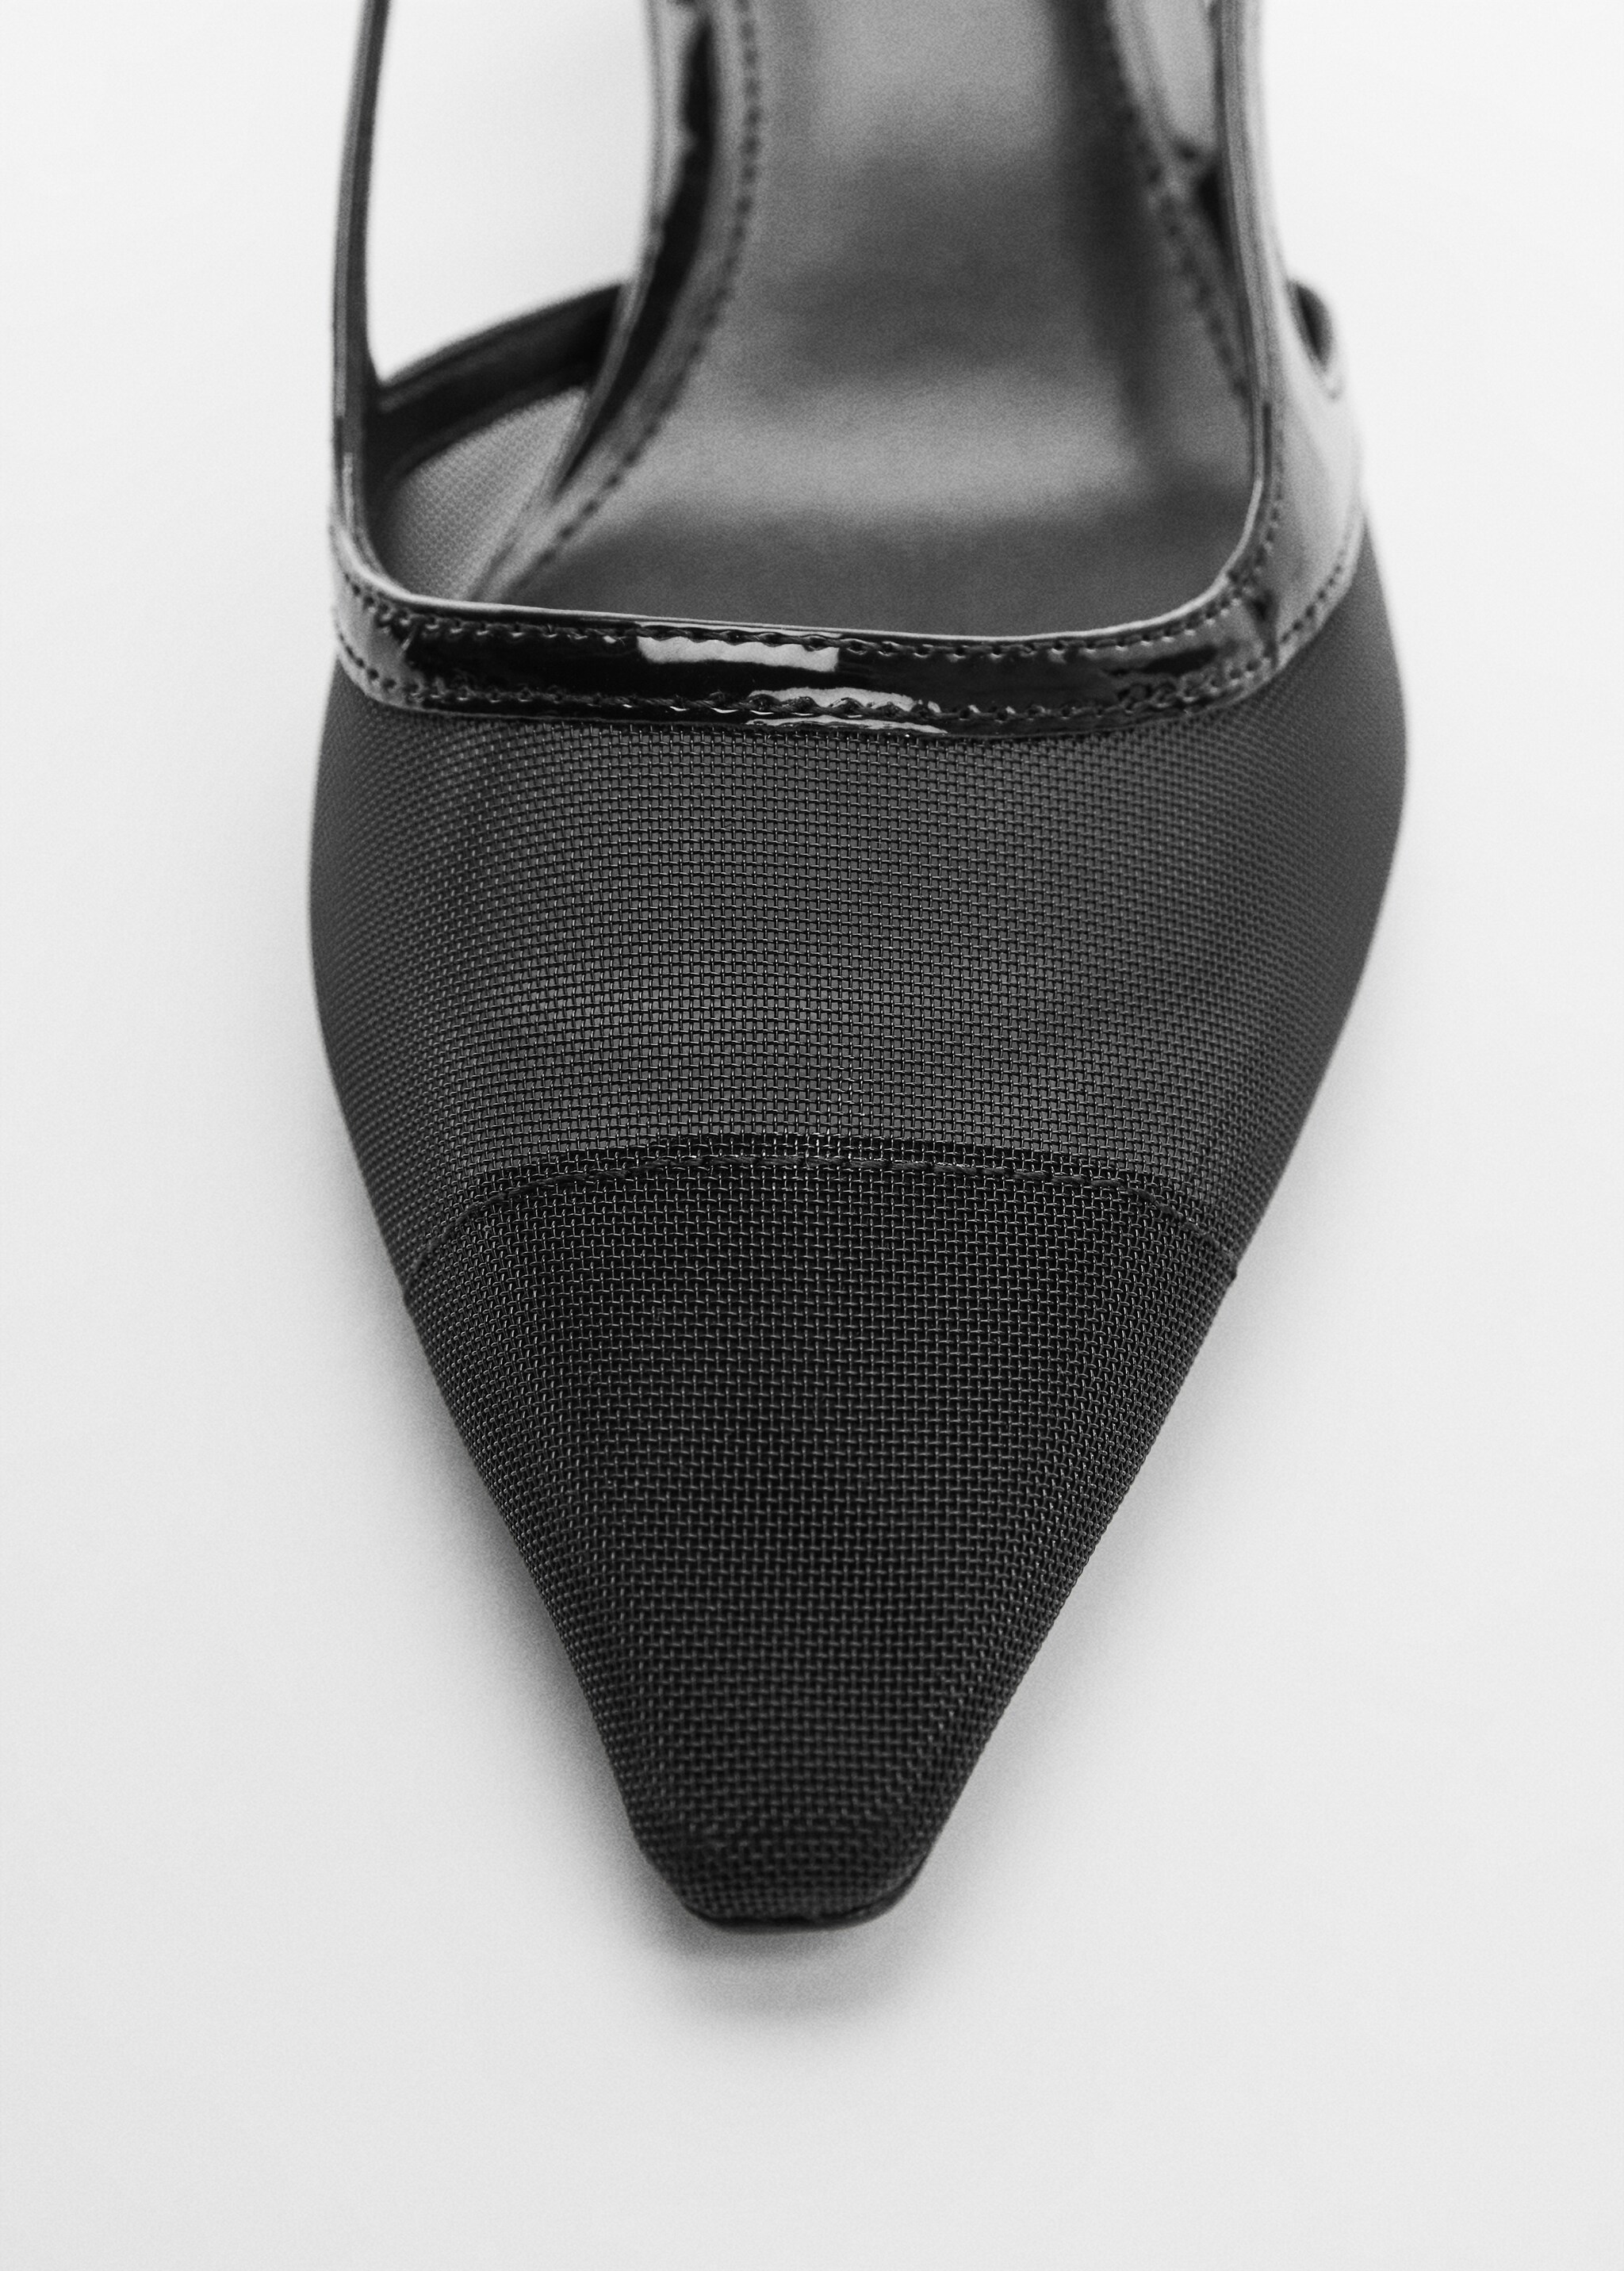 Fersenfreier Schuh mit Netz-Design - Detail des Artikels 1